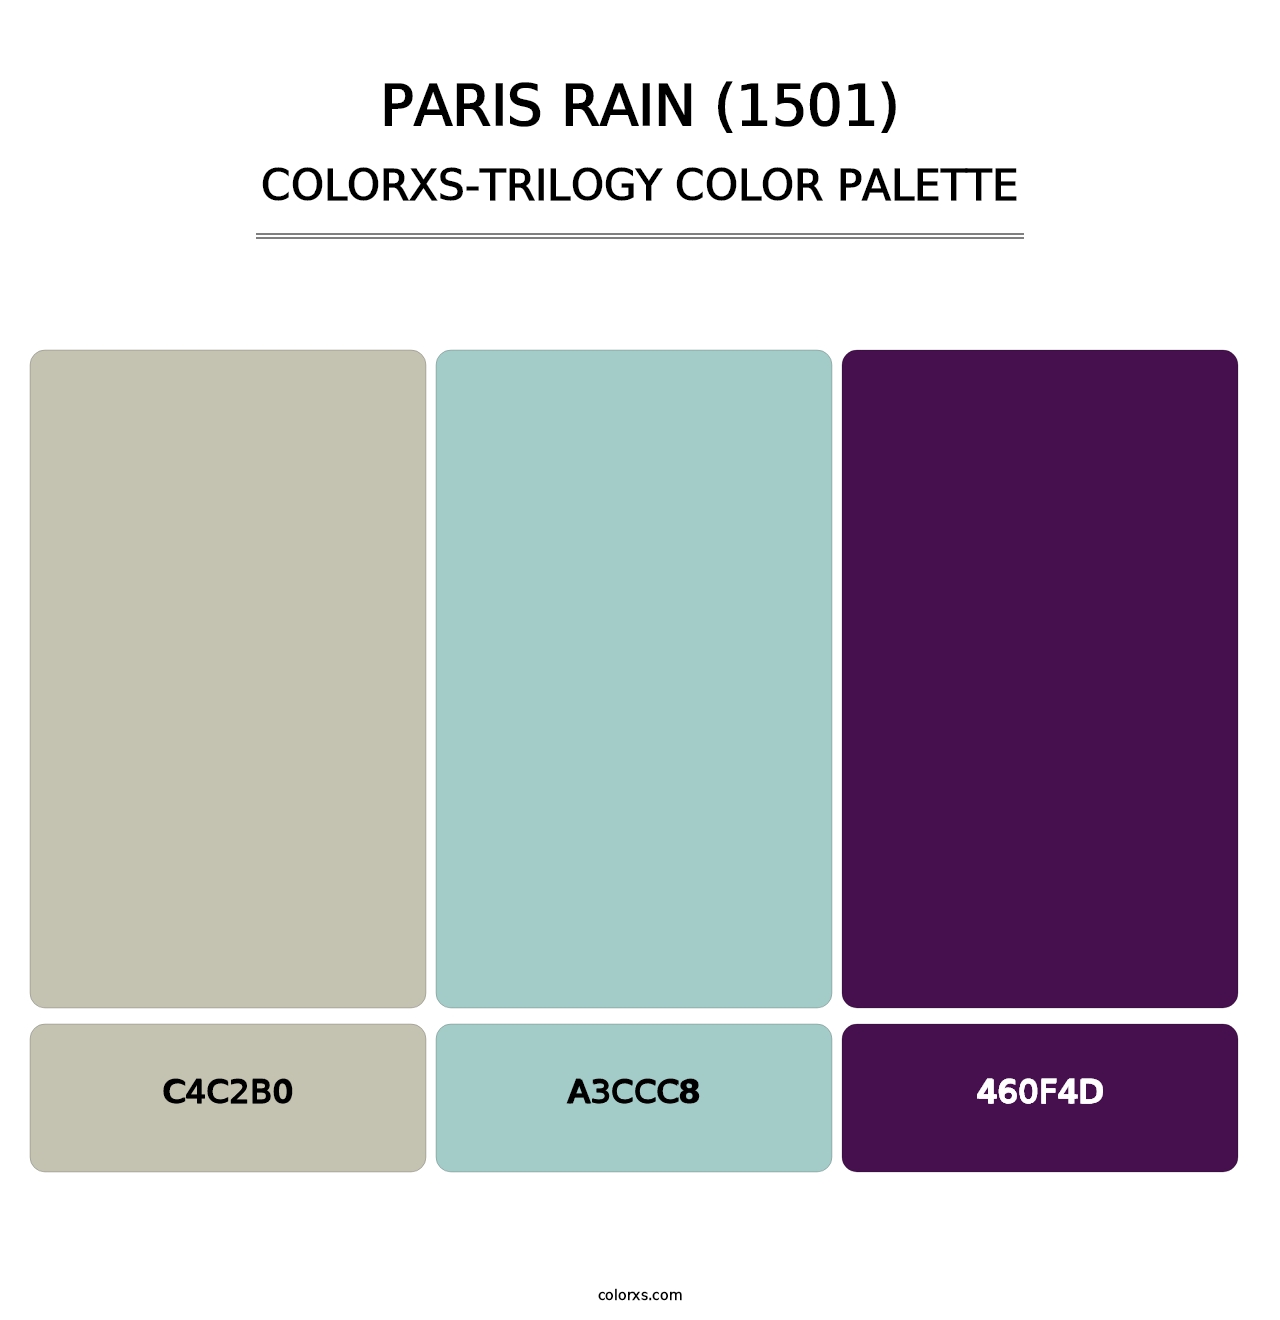 Paris Rain (1501) - Colorxs Trilogy Palette